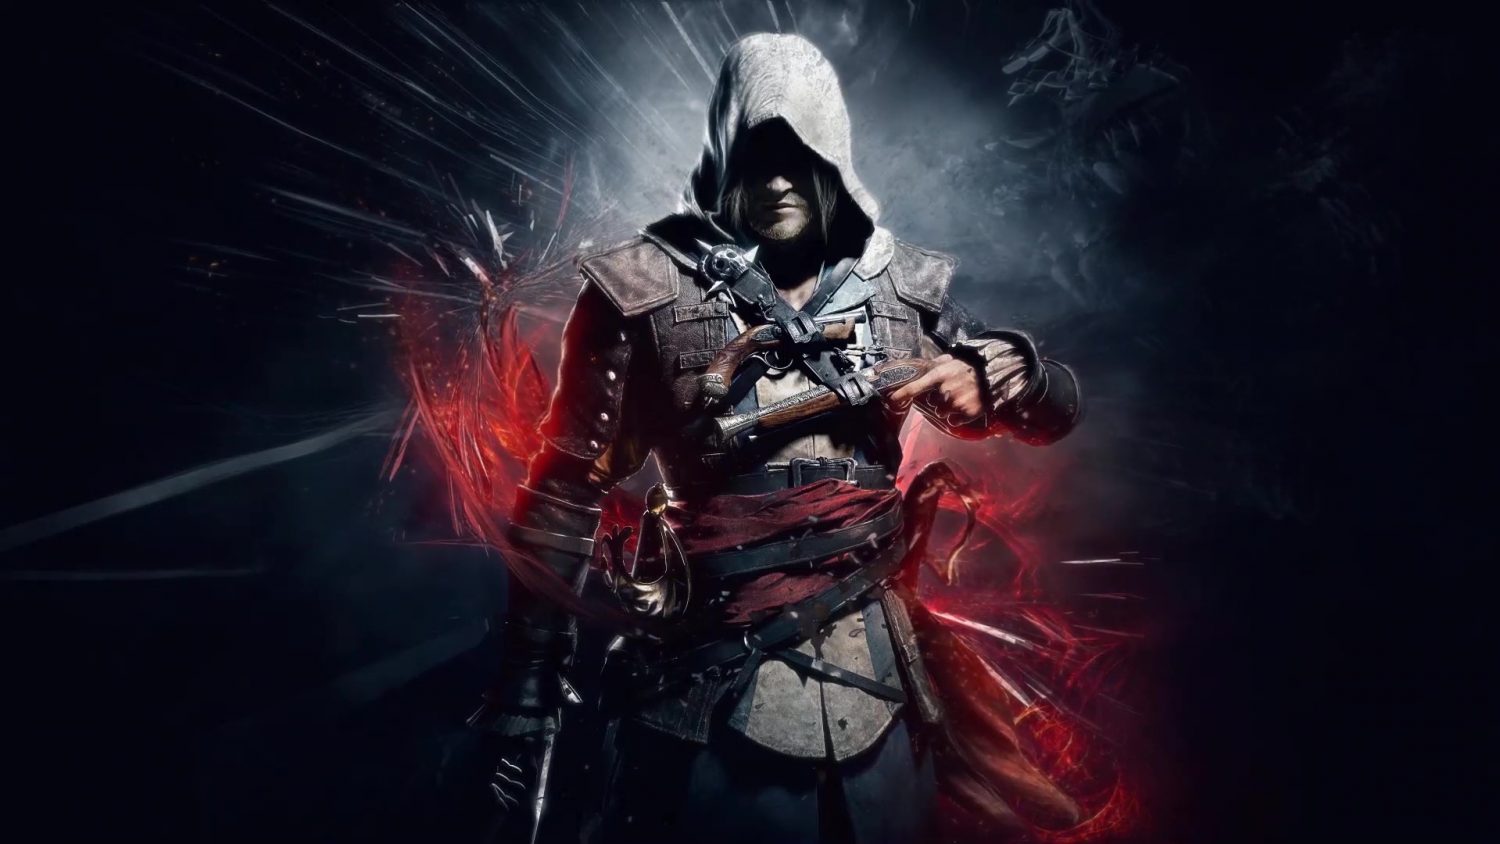 Ezio Assassin's Creed Fan art 4K Wallpapers | HD Wallpapers | ID #25660